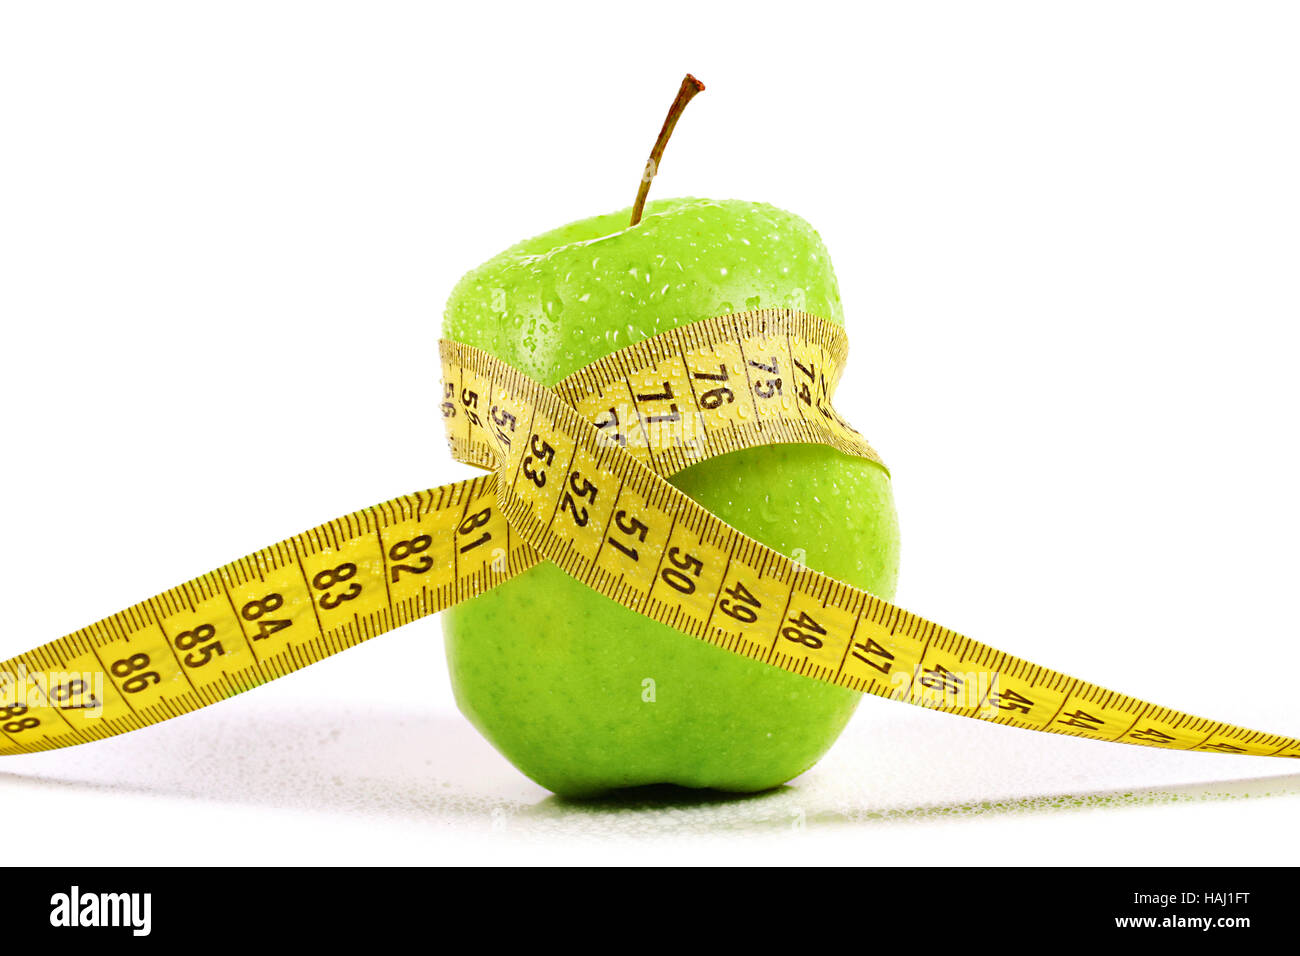 Suivre un régime, perdre du poids. concept apple avec un ruban à mesurer Banque D'Images